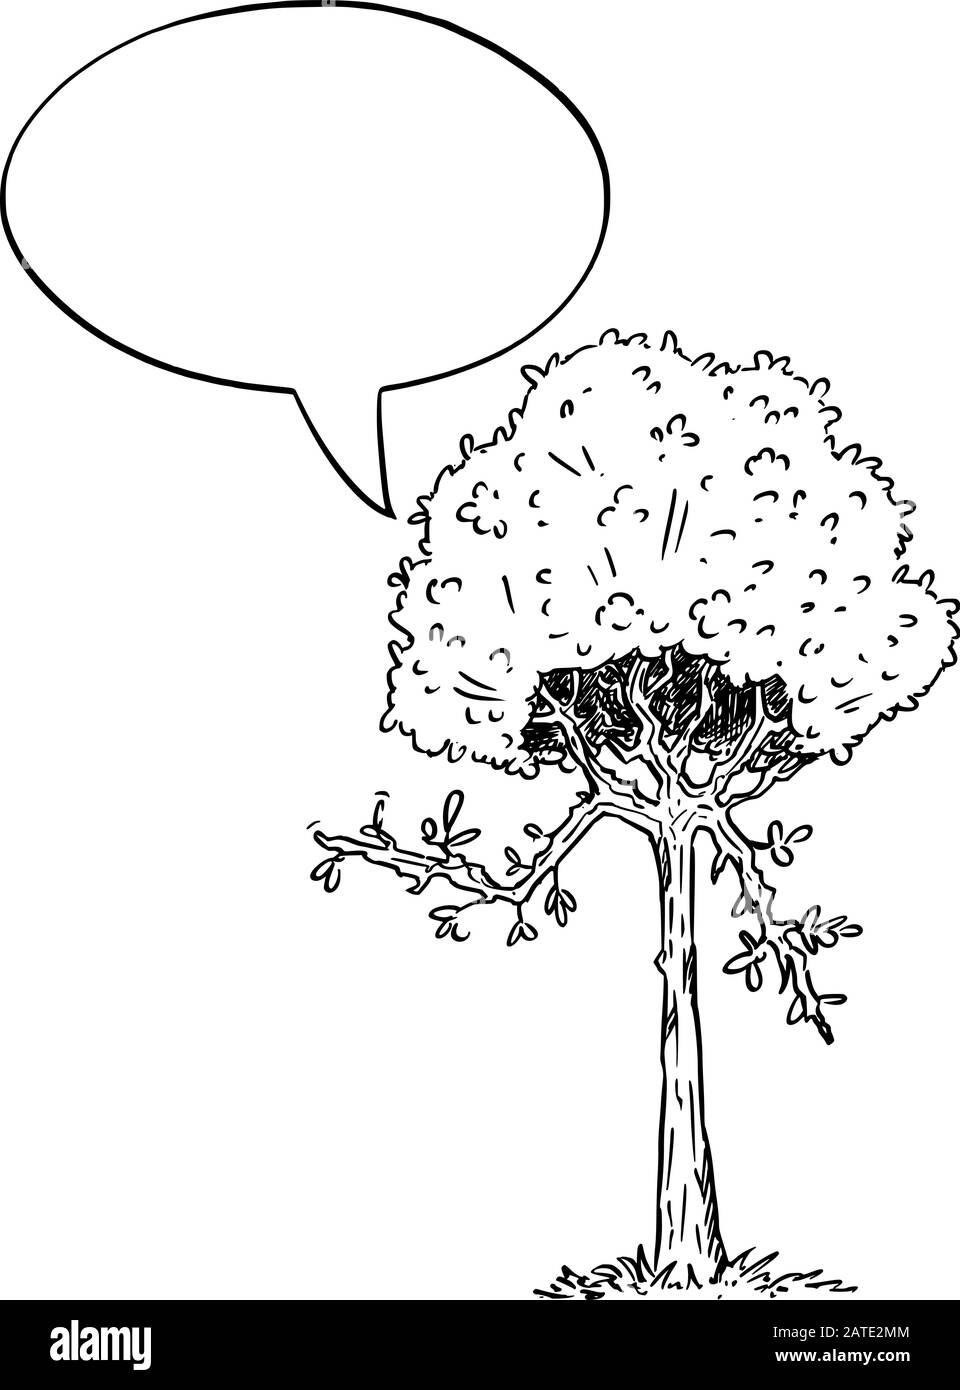 Illustration vectorielle du personnage de plante d'arbre à fleurs de dessin animé avec bulle de parole. Publicité écologique ou de nature ou conception marketing. Illustration de Vecteur